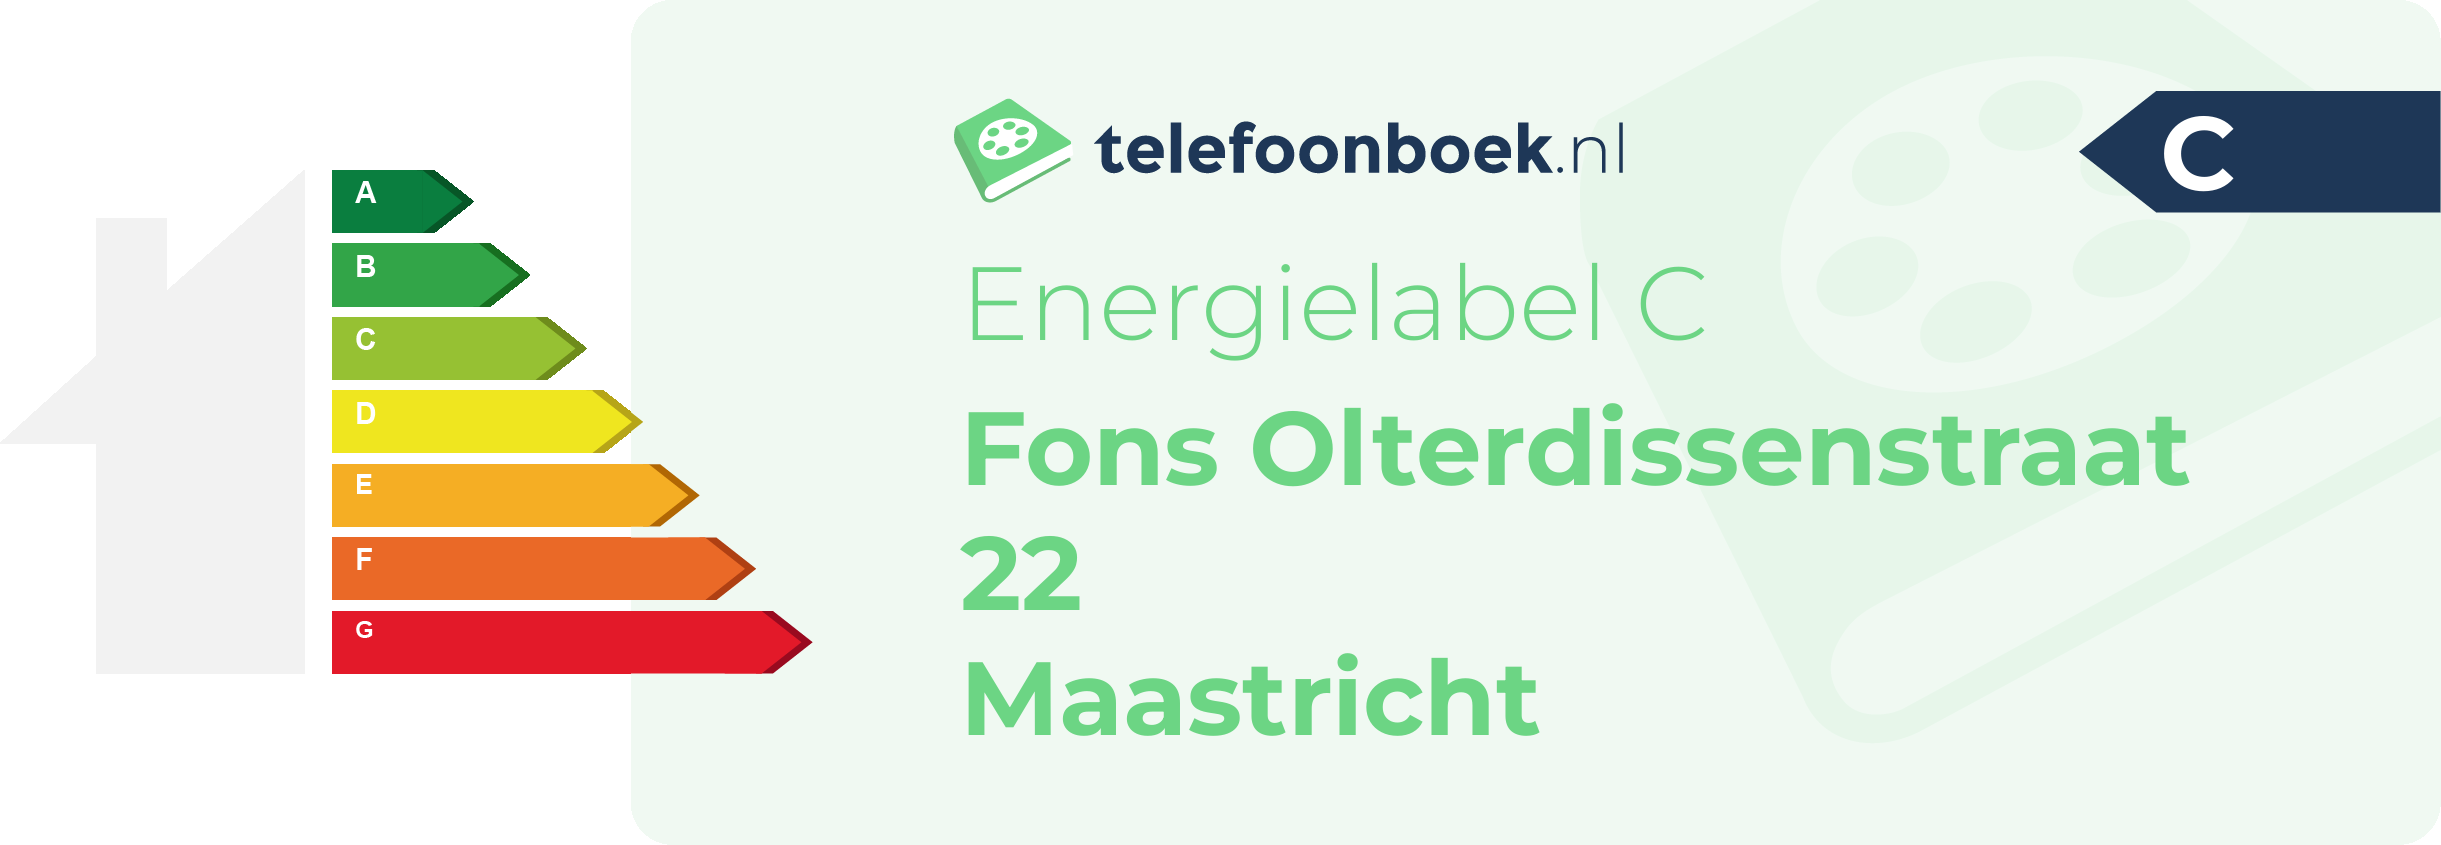 Energielabel Fons Olterdissenstraat 22 Maastricht